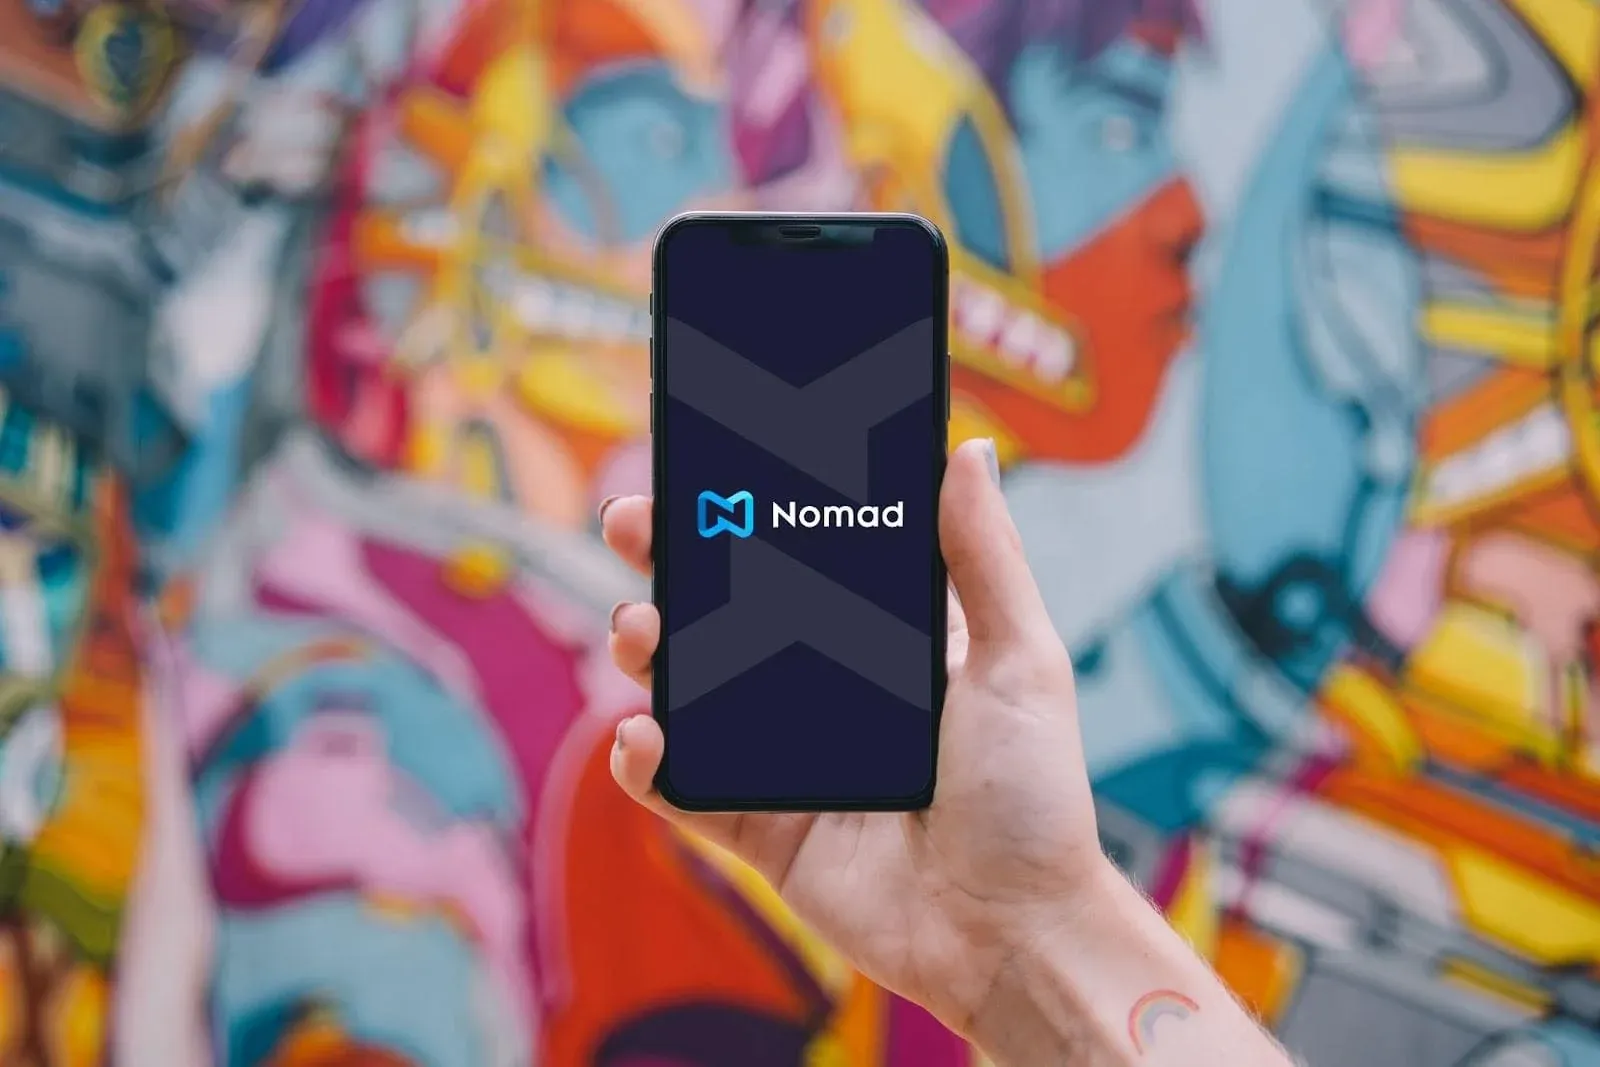 Digital noamd using Nomad eSIM mobile app